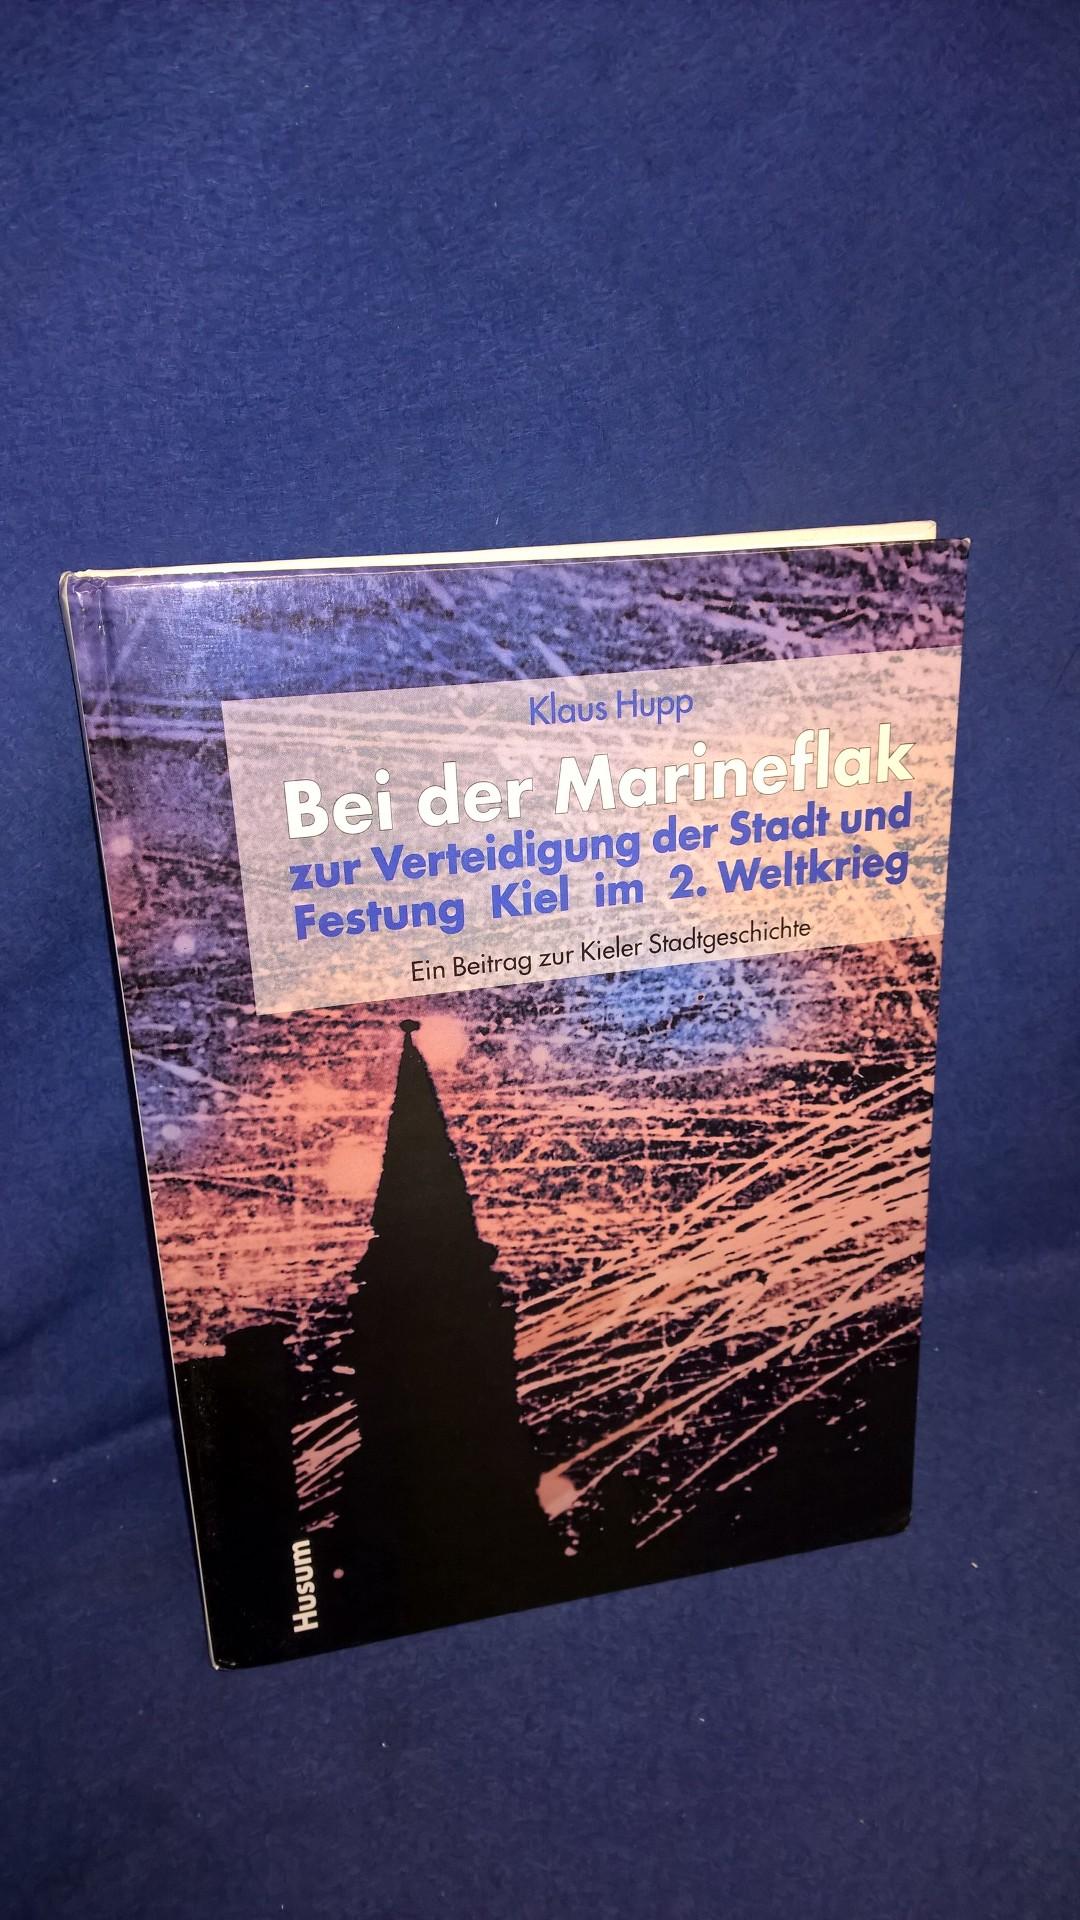 Bei der Marineflak zur Verteidigung der Stadt und Festung Kiel im 2. Weltkrieg. Ein Beitrag zur Kieler Stadtgeschichte.